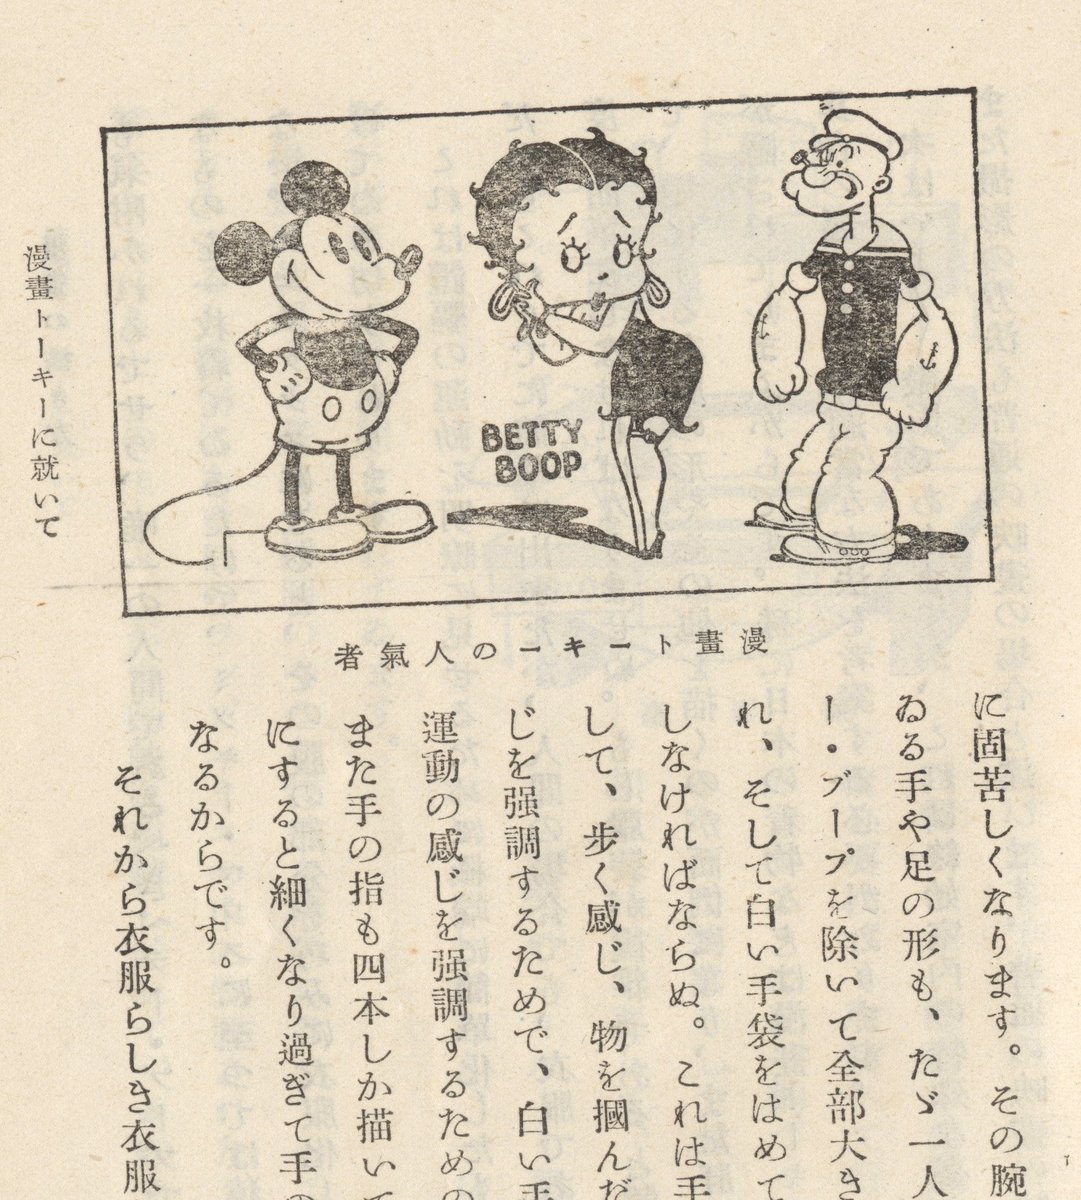 Itarusaito なんかイベントが多いと思ったら今年は日本でアニメが製作されて百周年って事でいろいろ盛り上がっている訳だな ちょっと便乗してうちにあるアニメの資料をいくつか おそらく日本最古のアニメ関連how To本 1943年刊 のトレス台 キャラの参考と